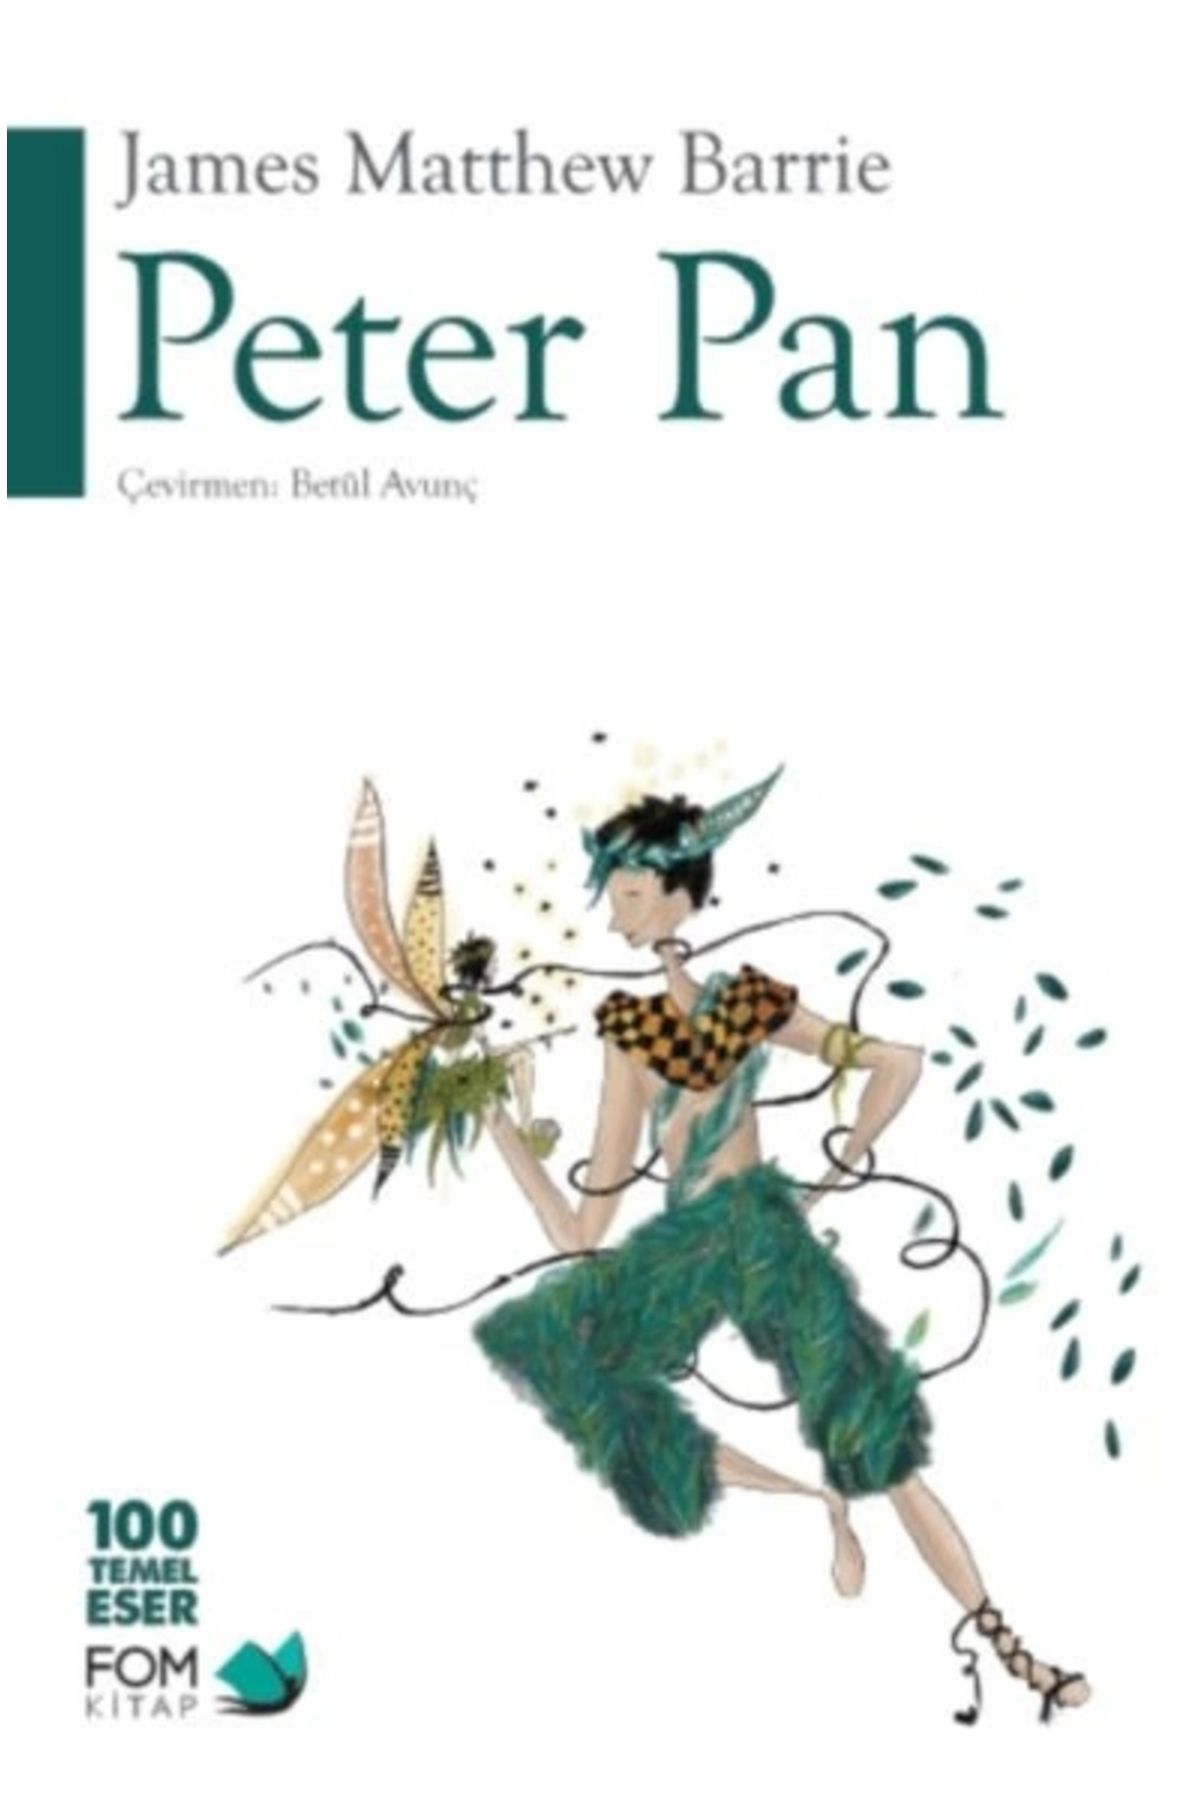 Fom Kitap Yayınları Peter Pan